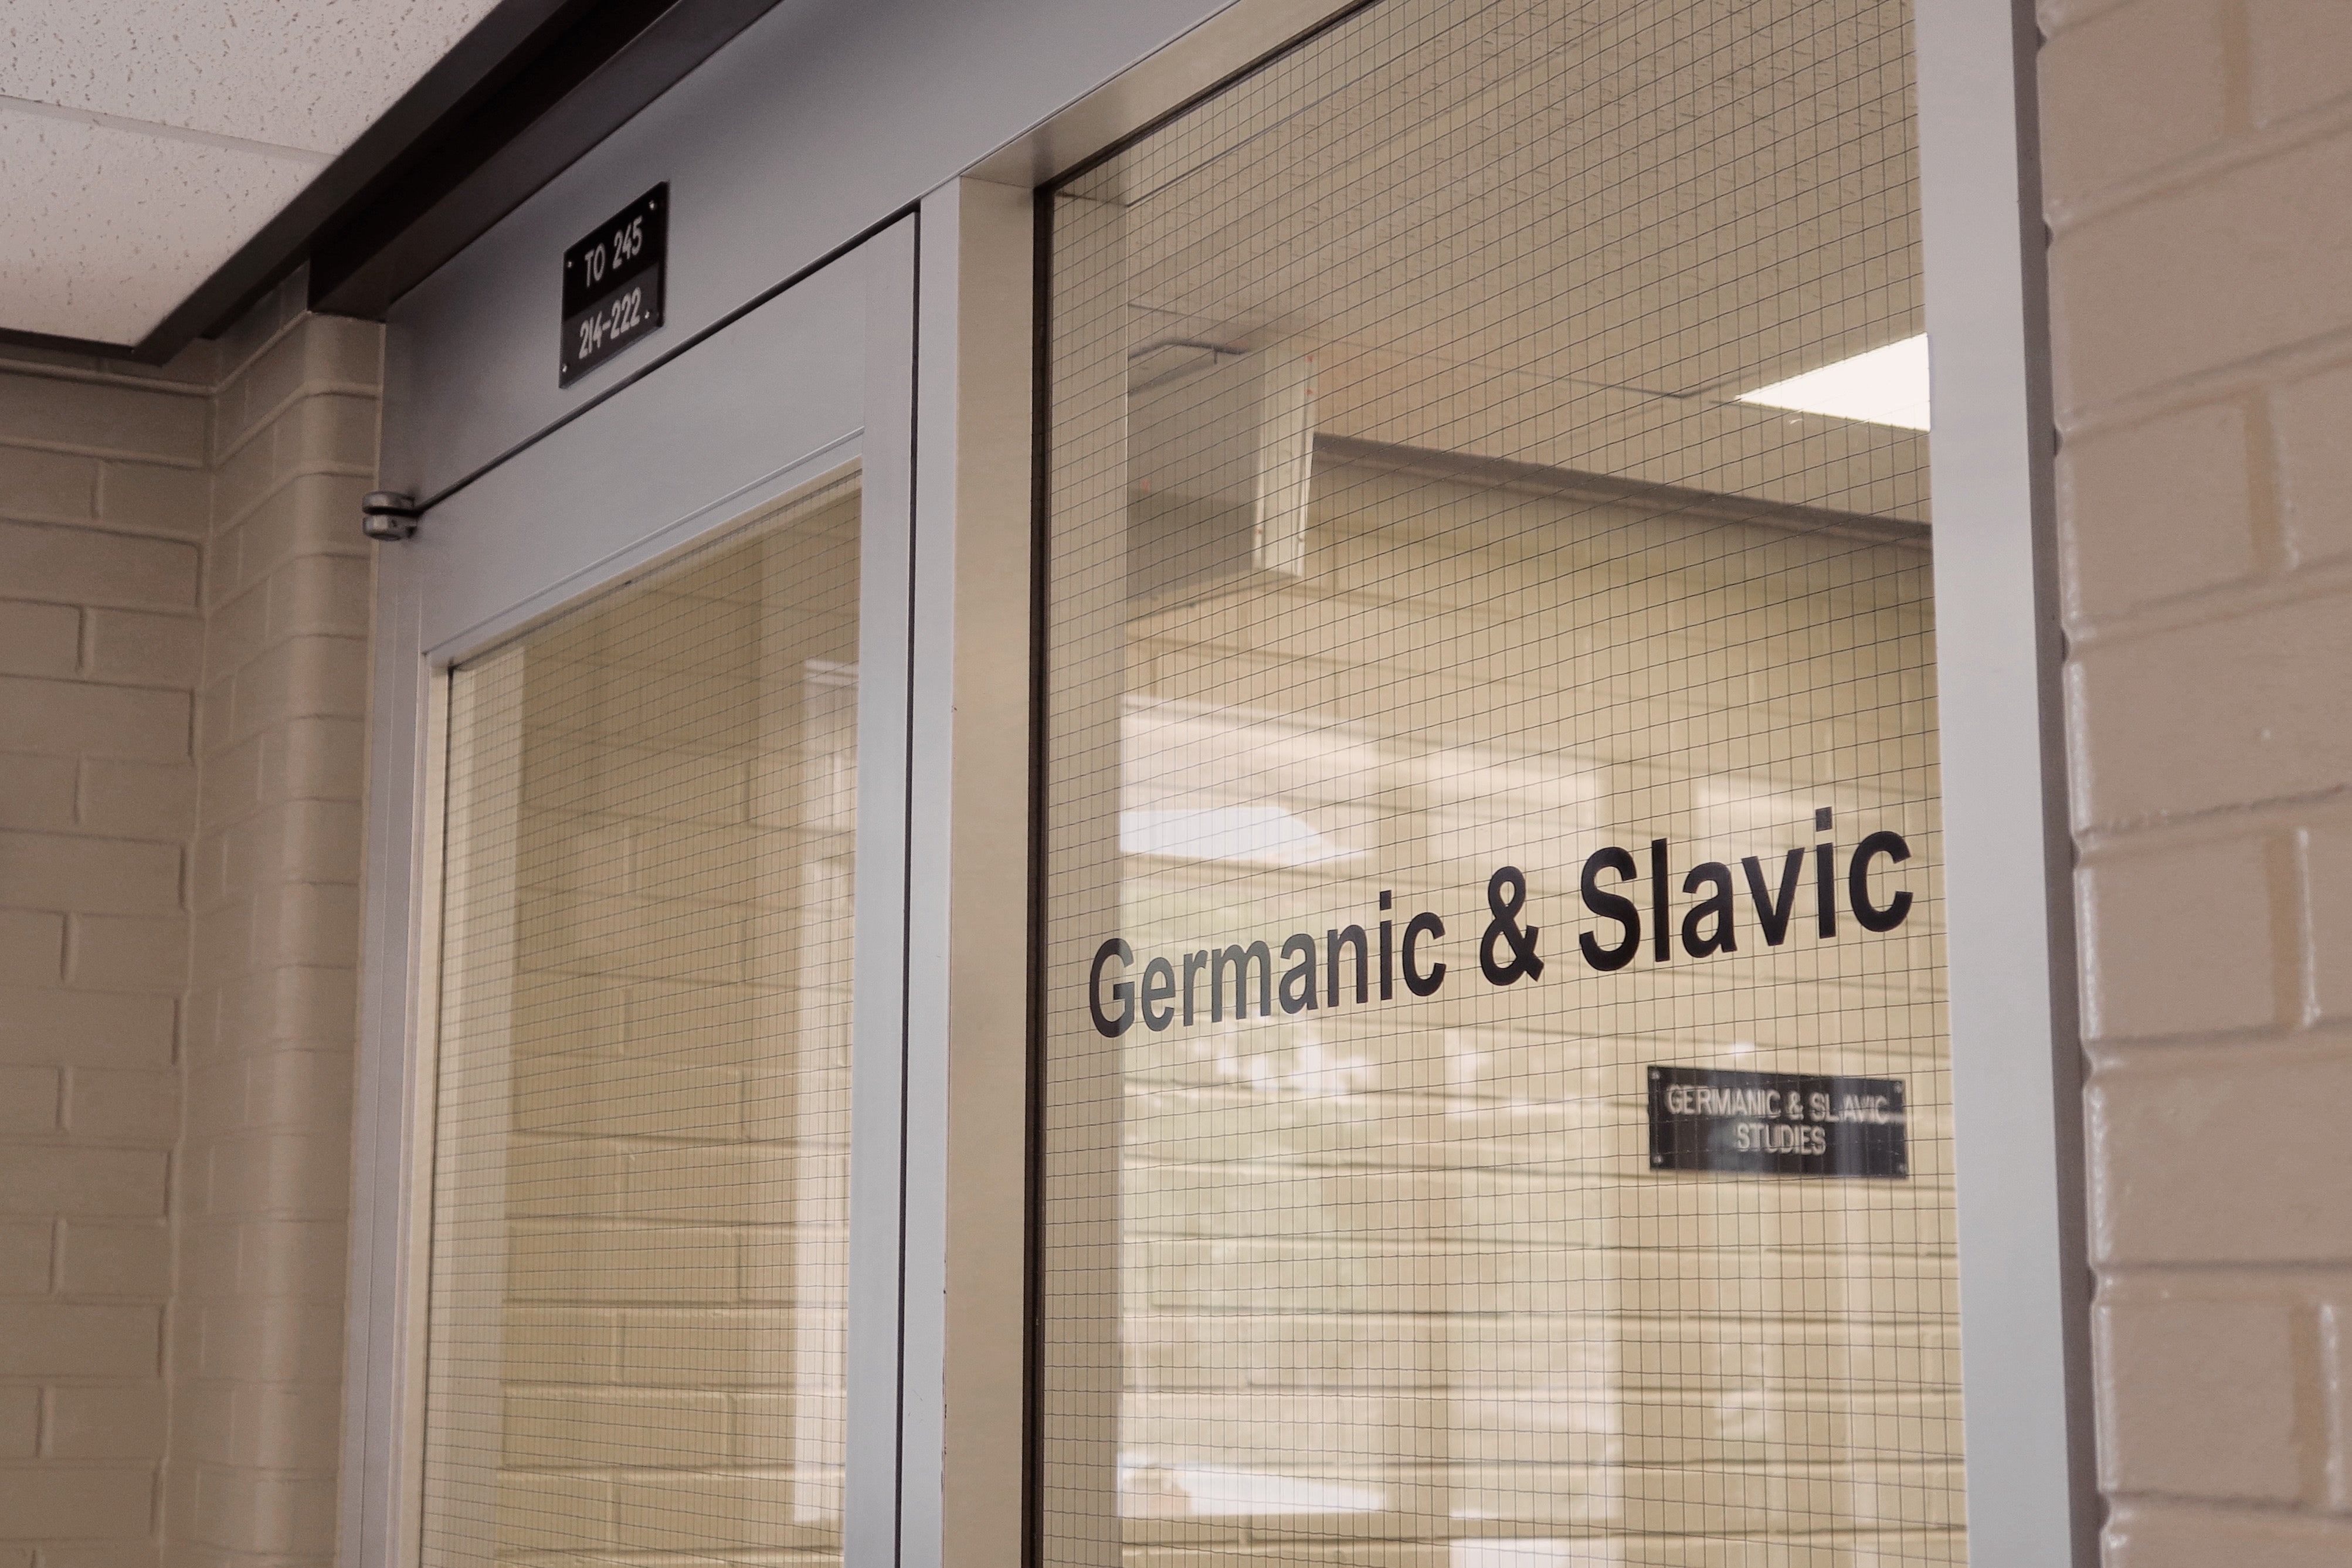 Germanic and Slavic Studies door